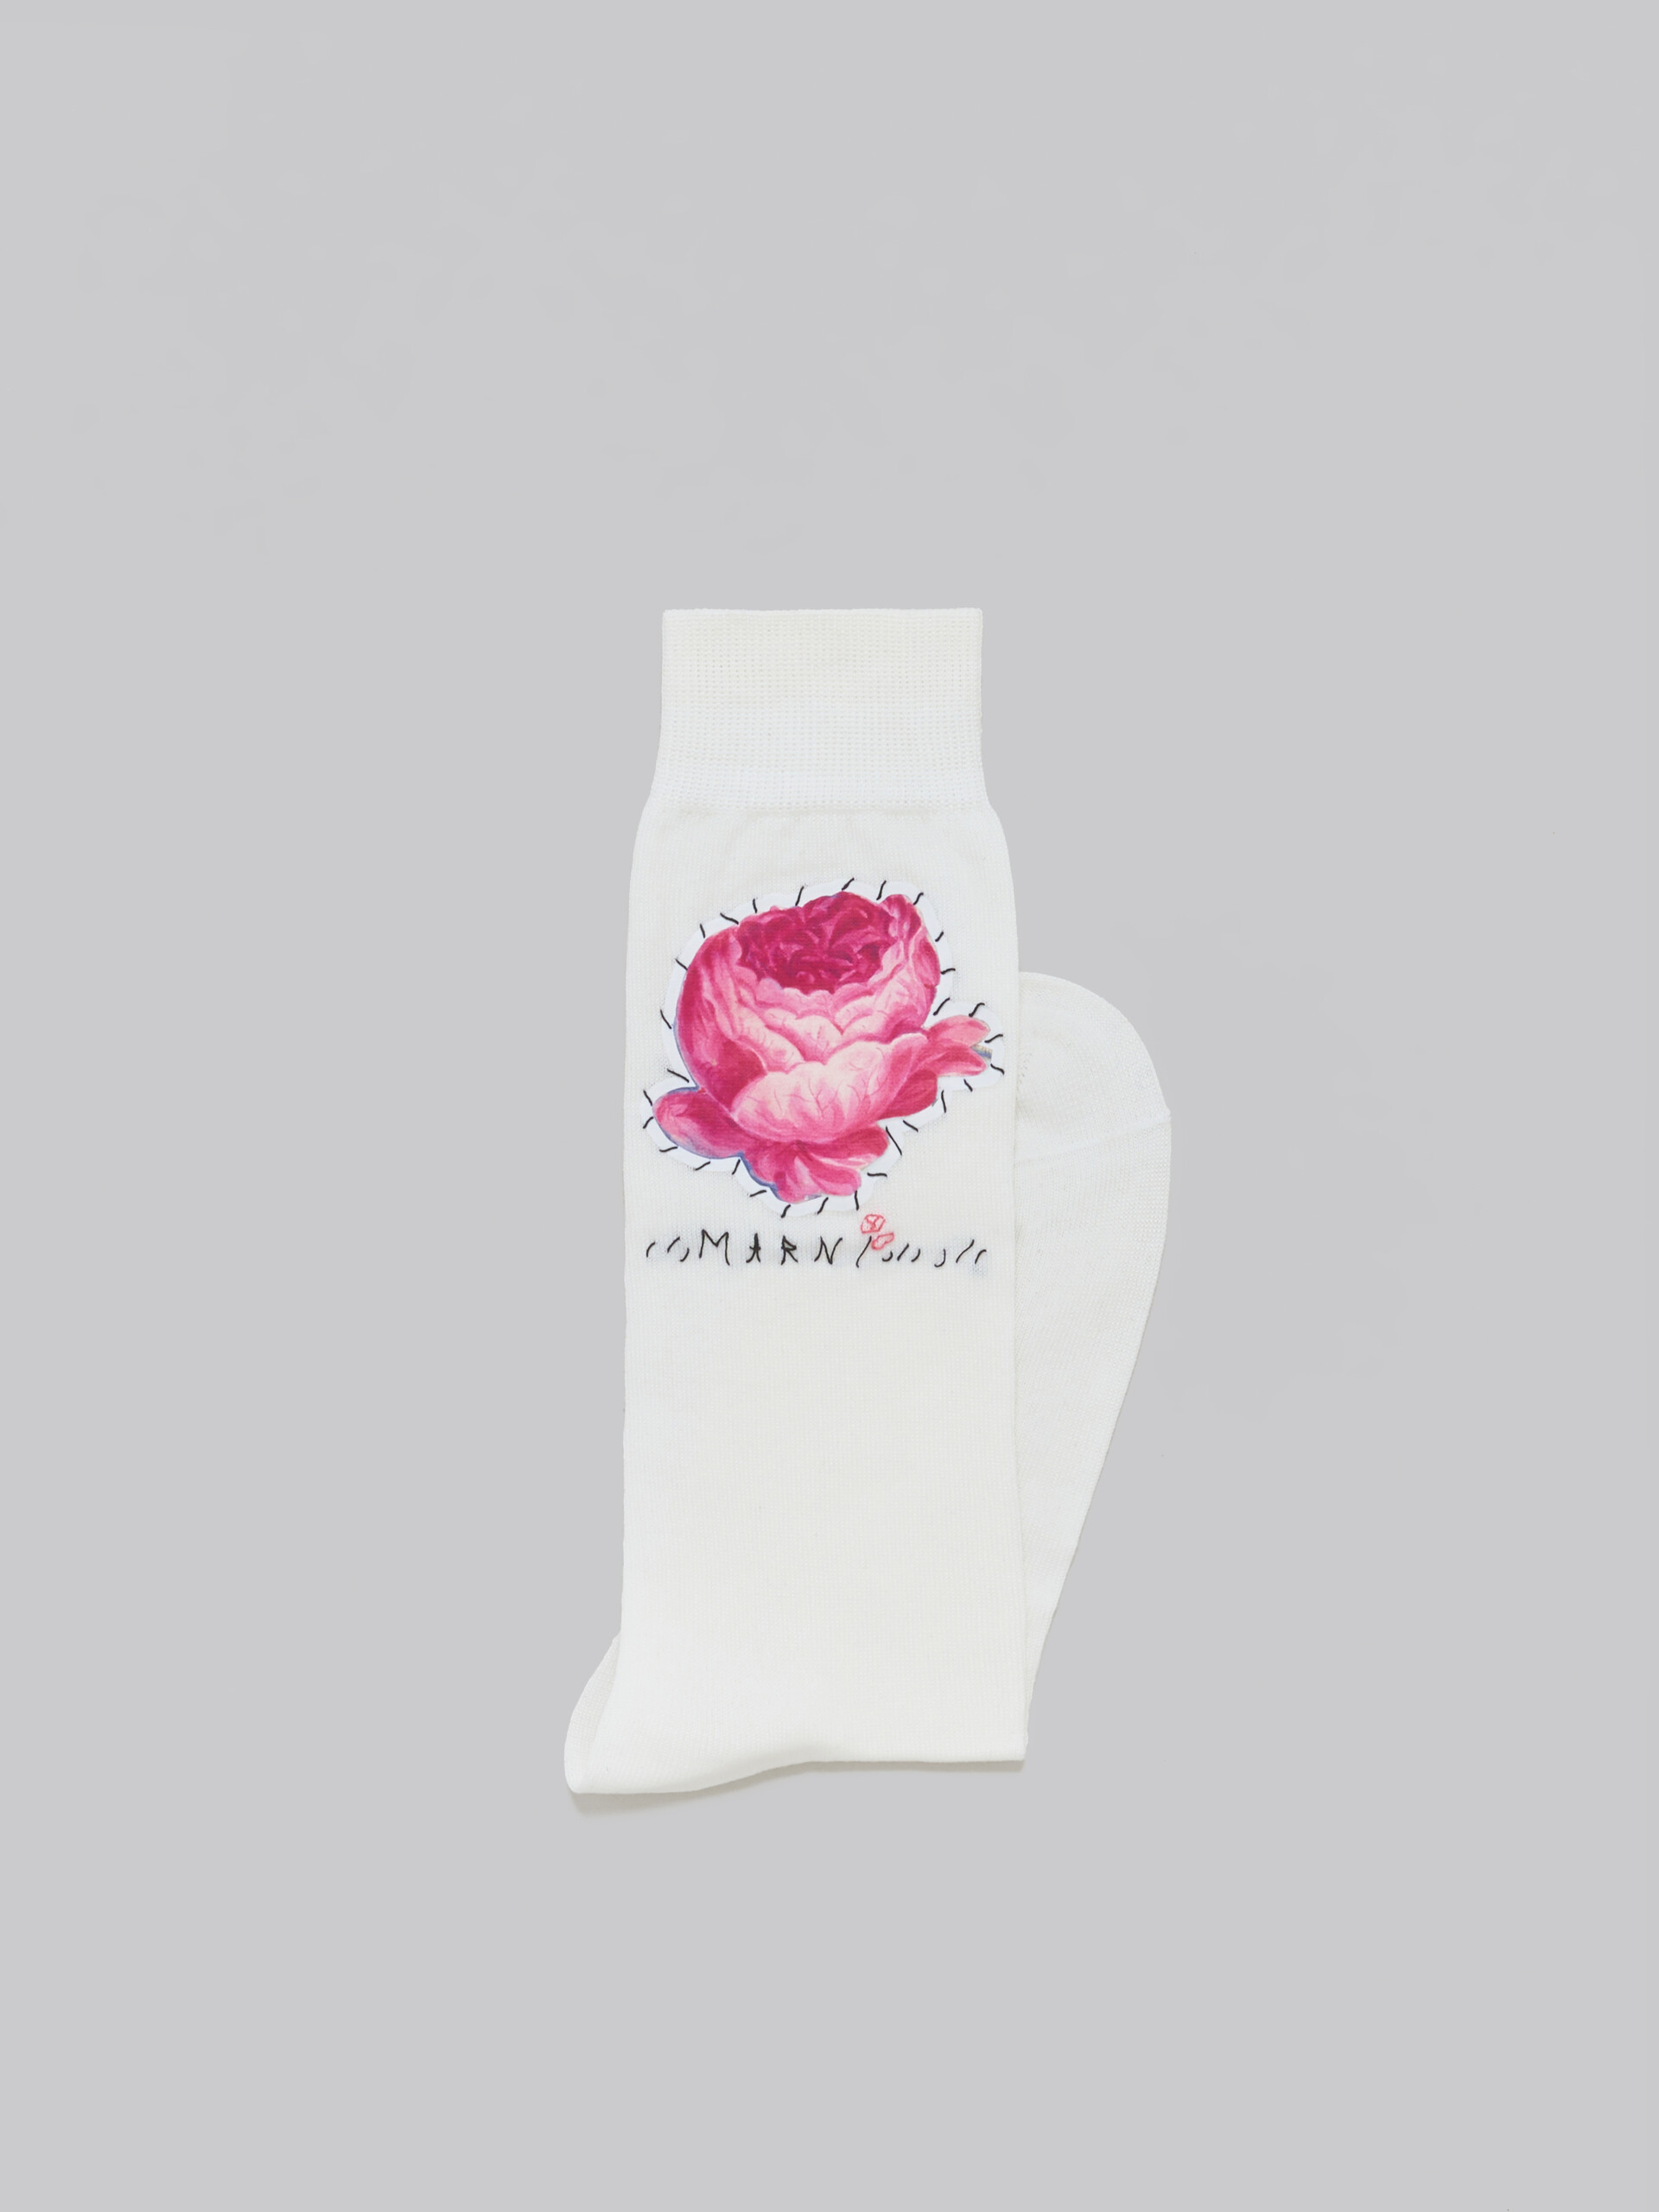 Calzini in cotone rosa con applicazioni a fiori - Calze - Image 2